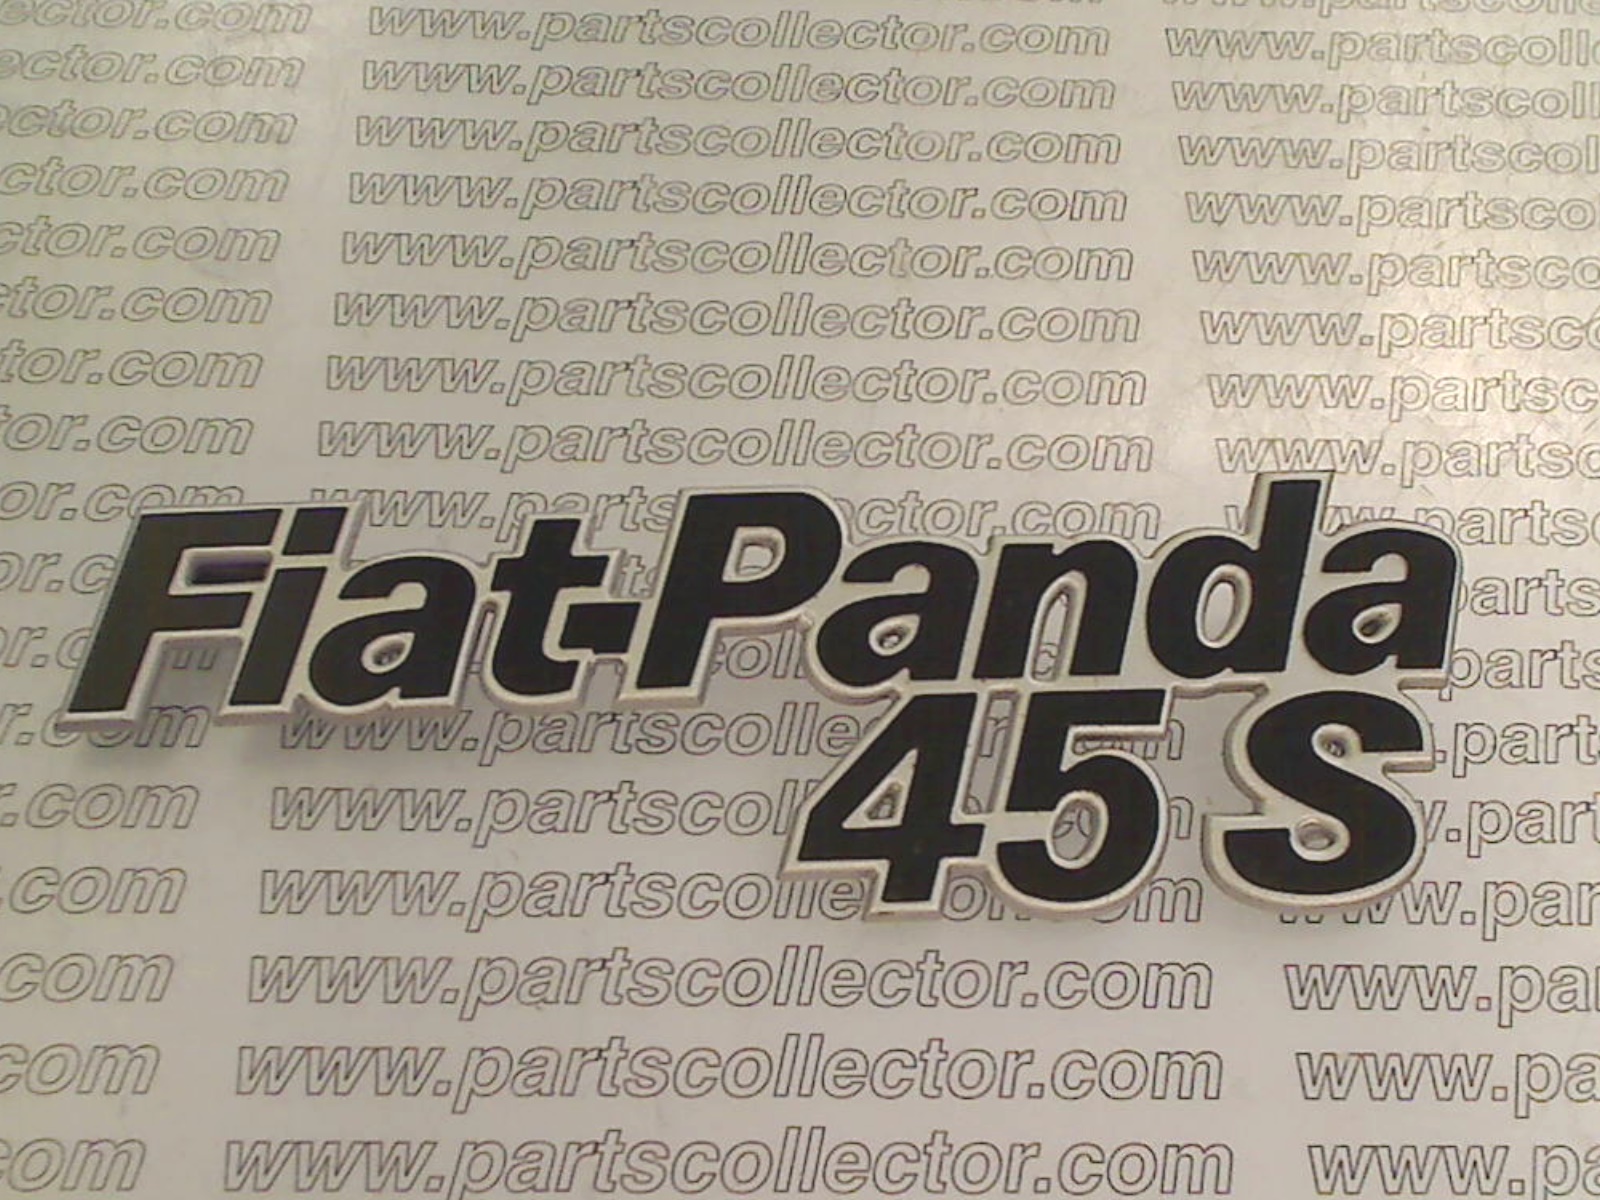 FIAT PANDA 45 S EMBLEM